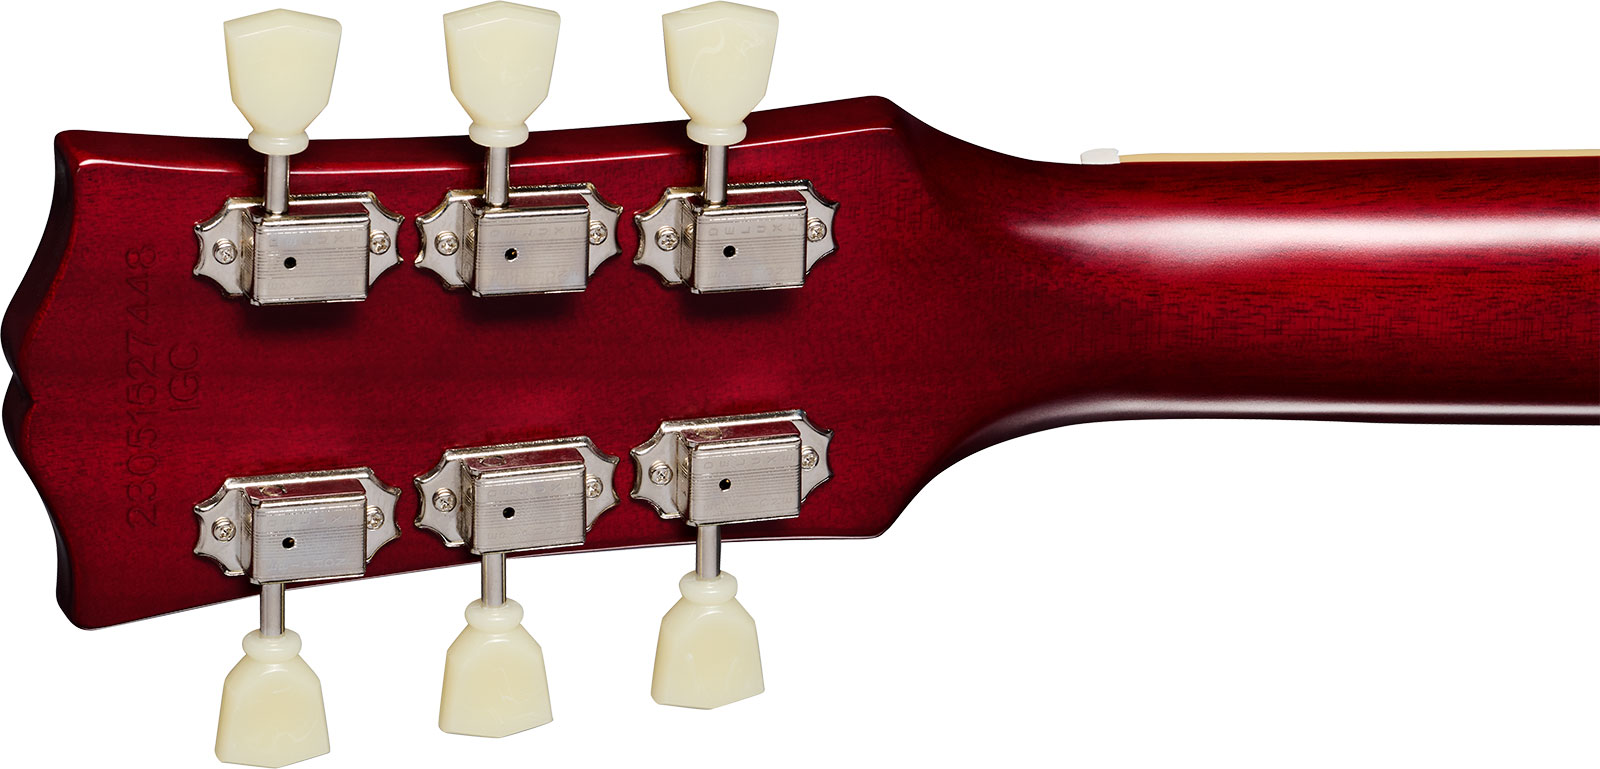 Epiphone 1959 Les Paul Standard Inspired By 2h Gibson Ht Lau - Vos Factory Burst - Guitare Électrique Single Cut - Variation 4